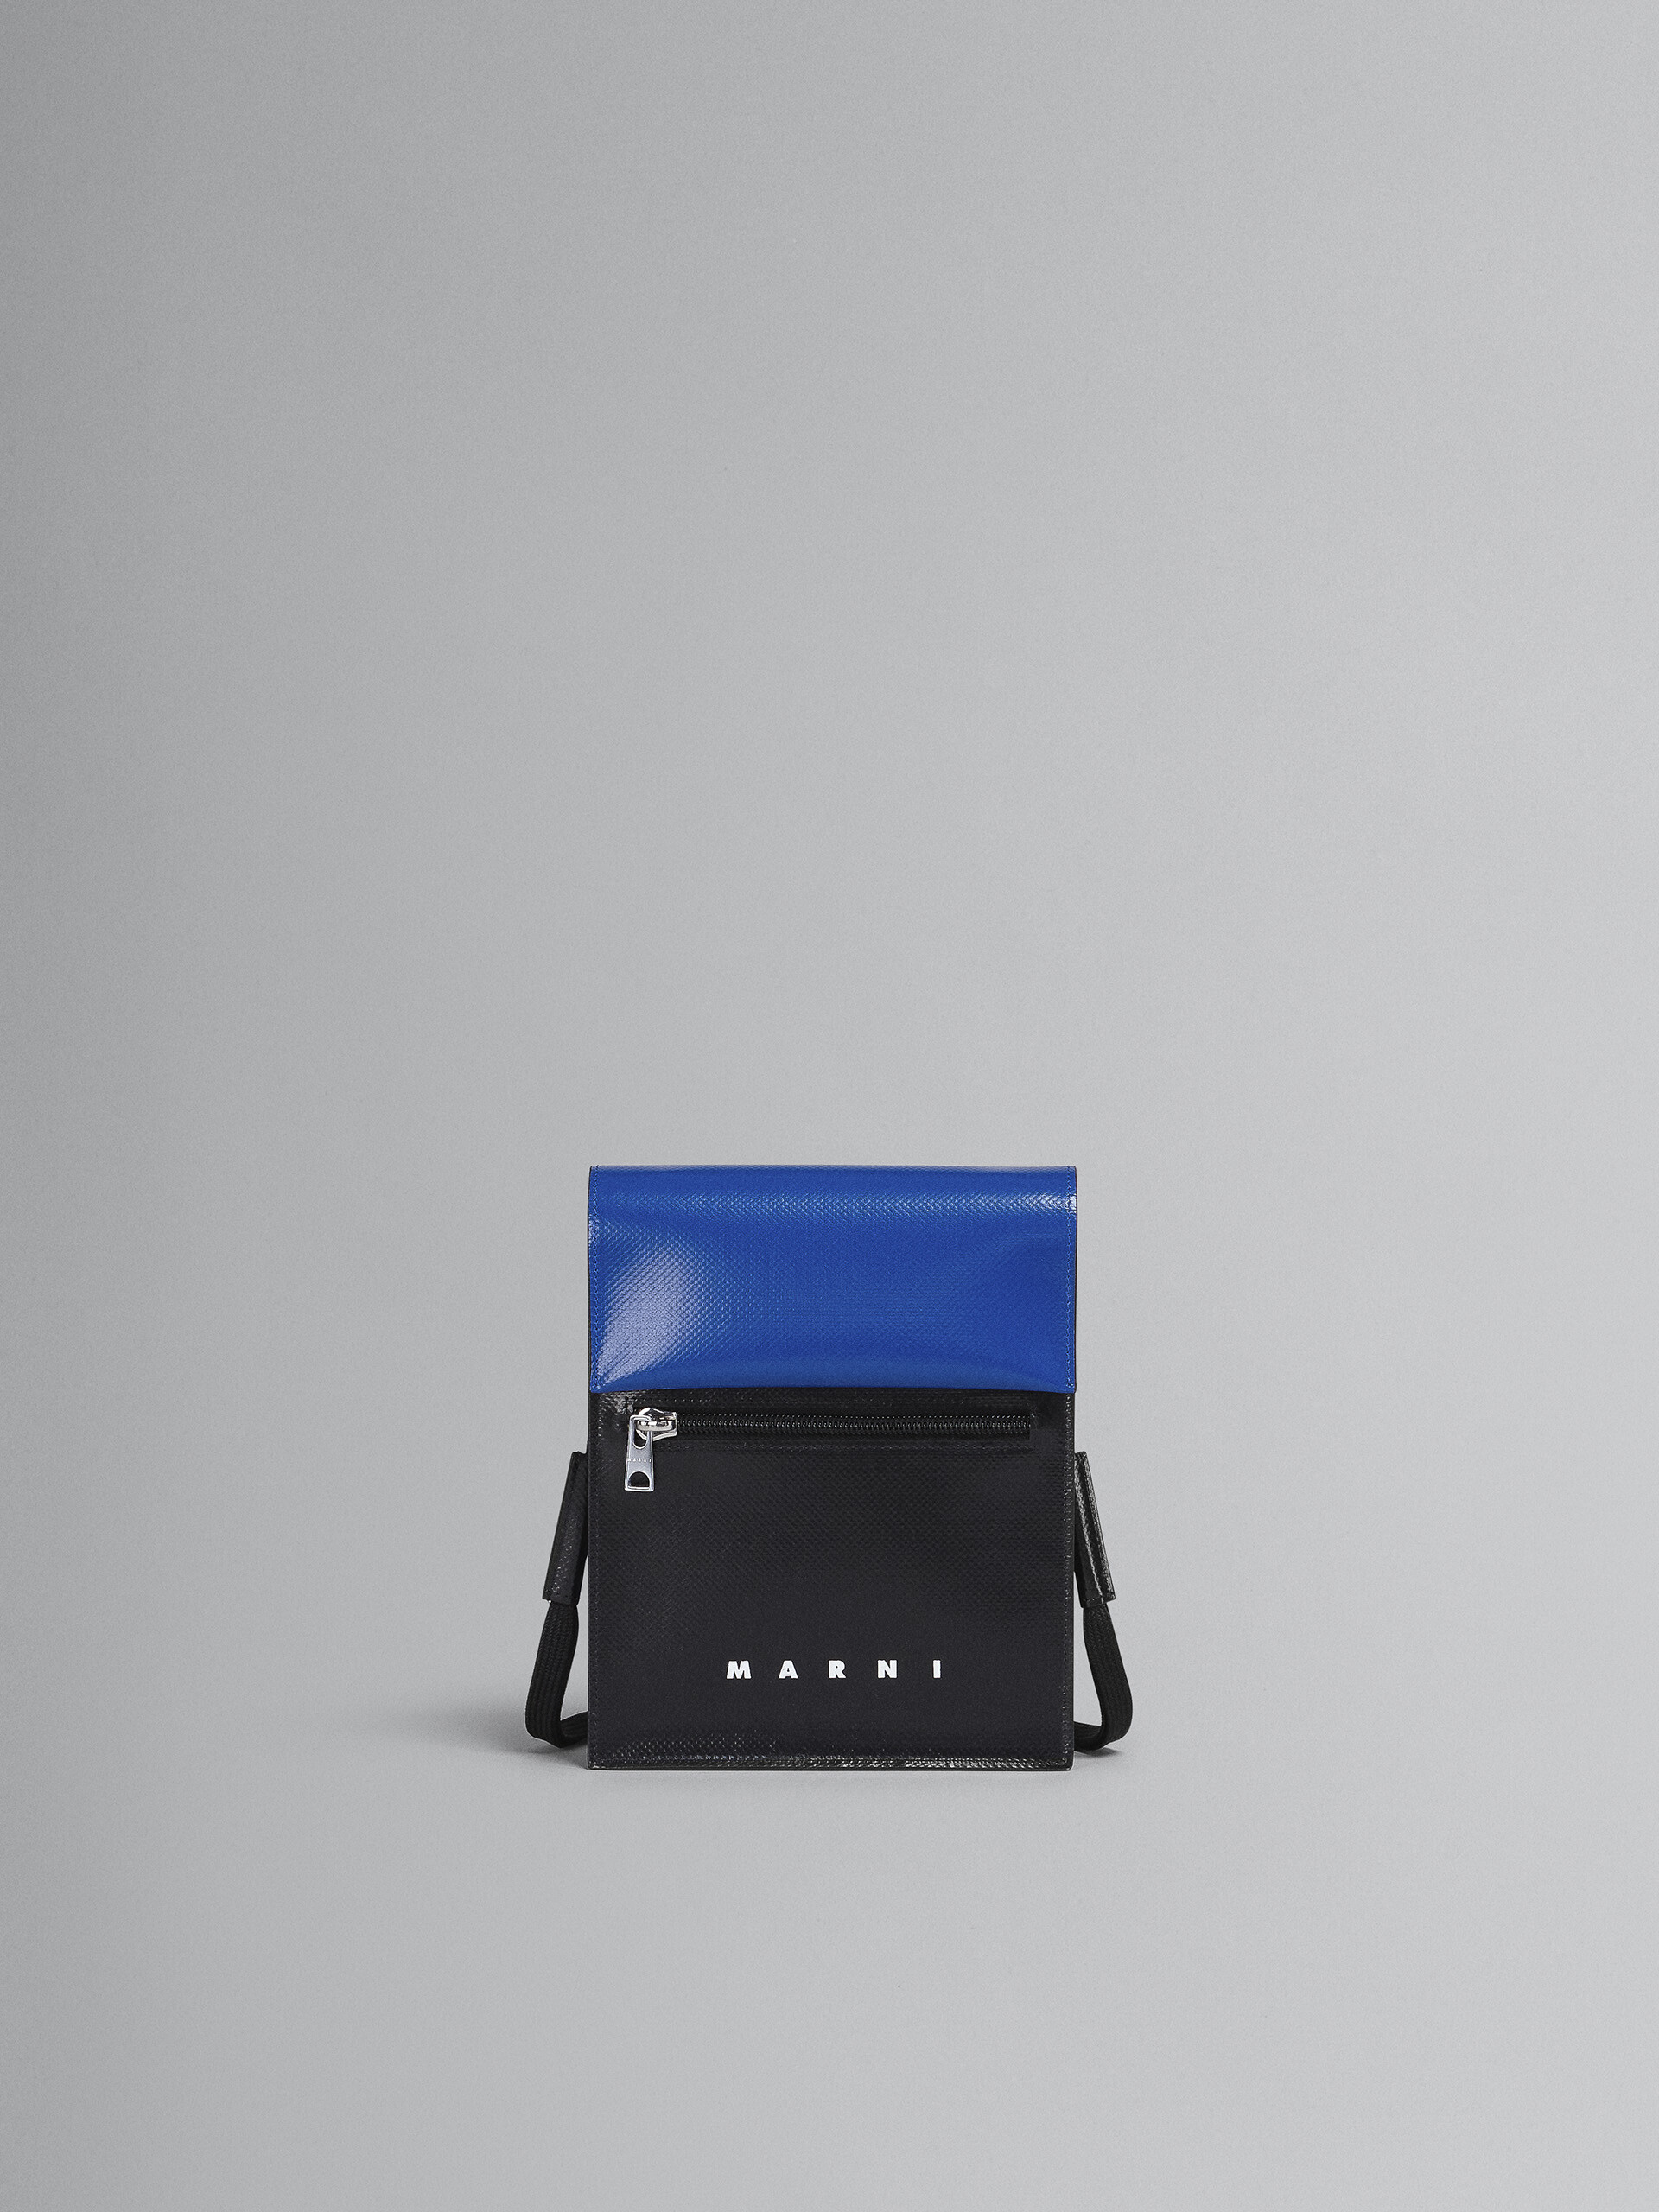 Tribeca shoulder bag in blue and black - Shoulder Bag - Image 1